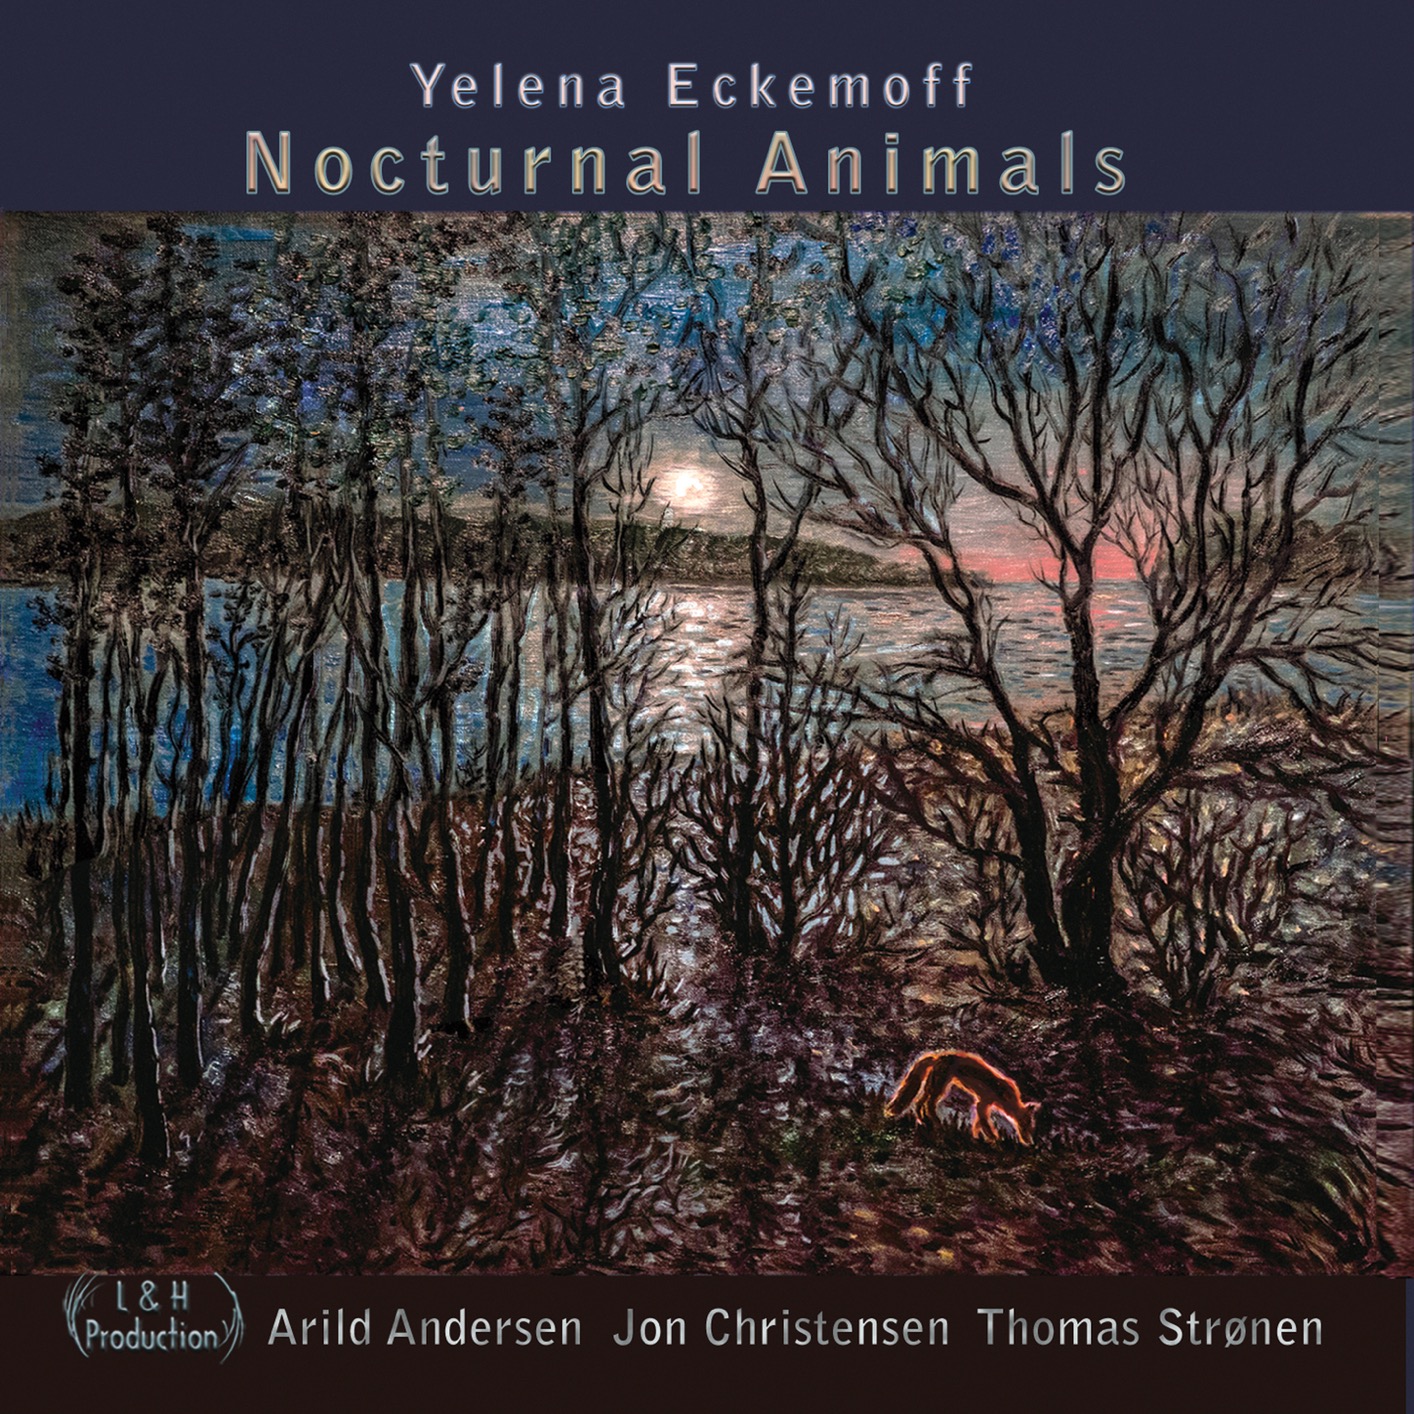 Yelena Eckemoff - Nocturnal Animals (2020) [FLAC 24bit/96kHz]